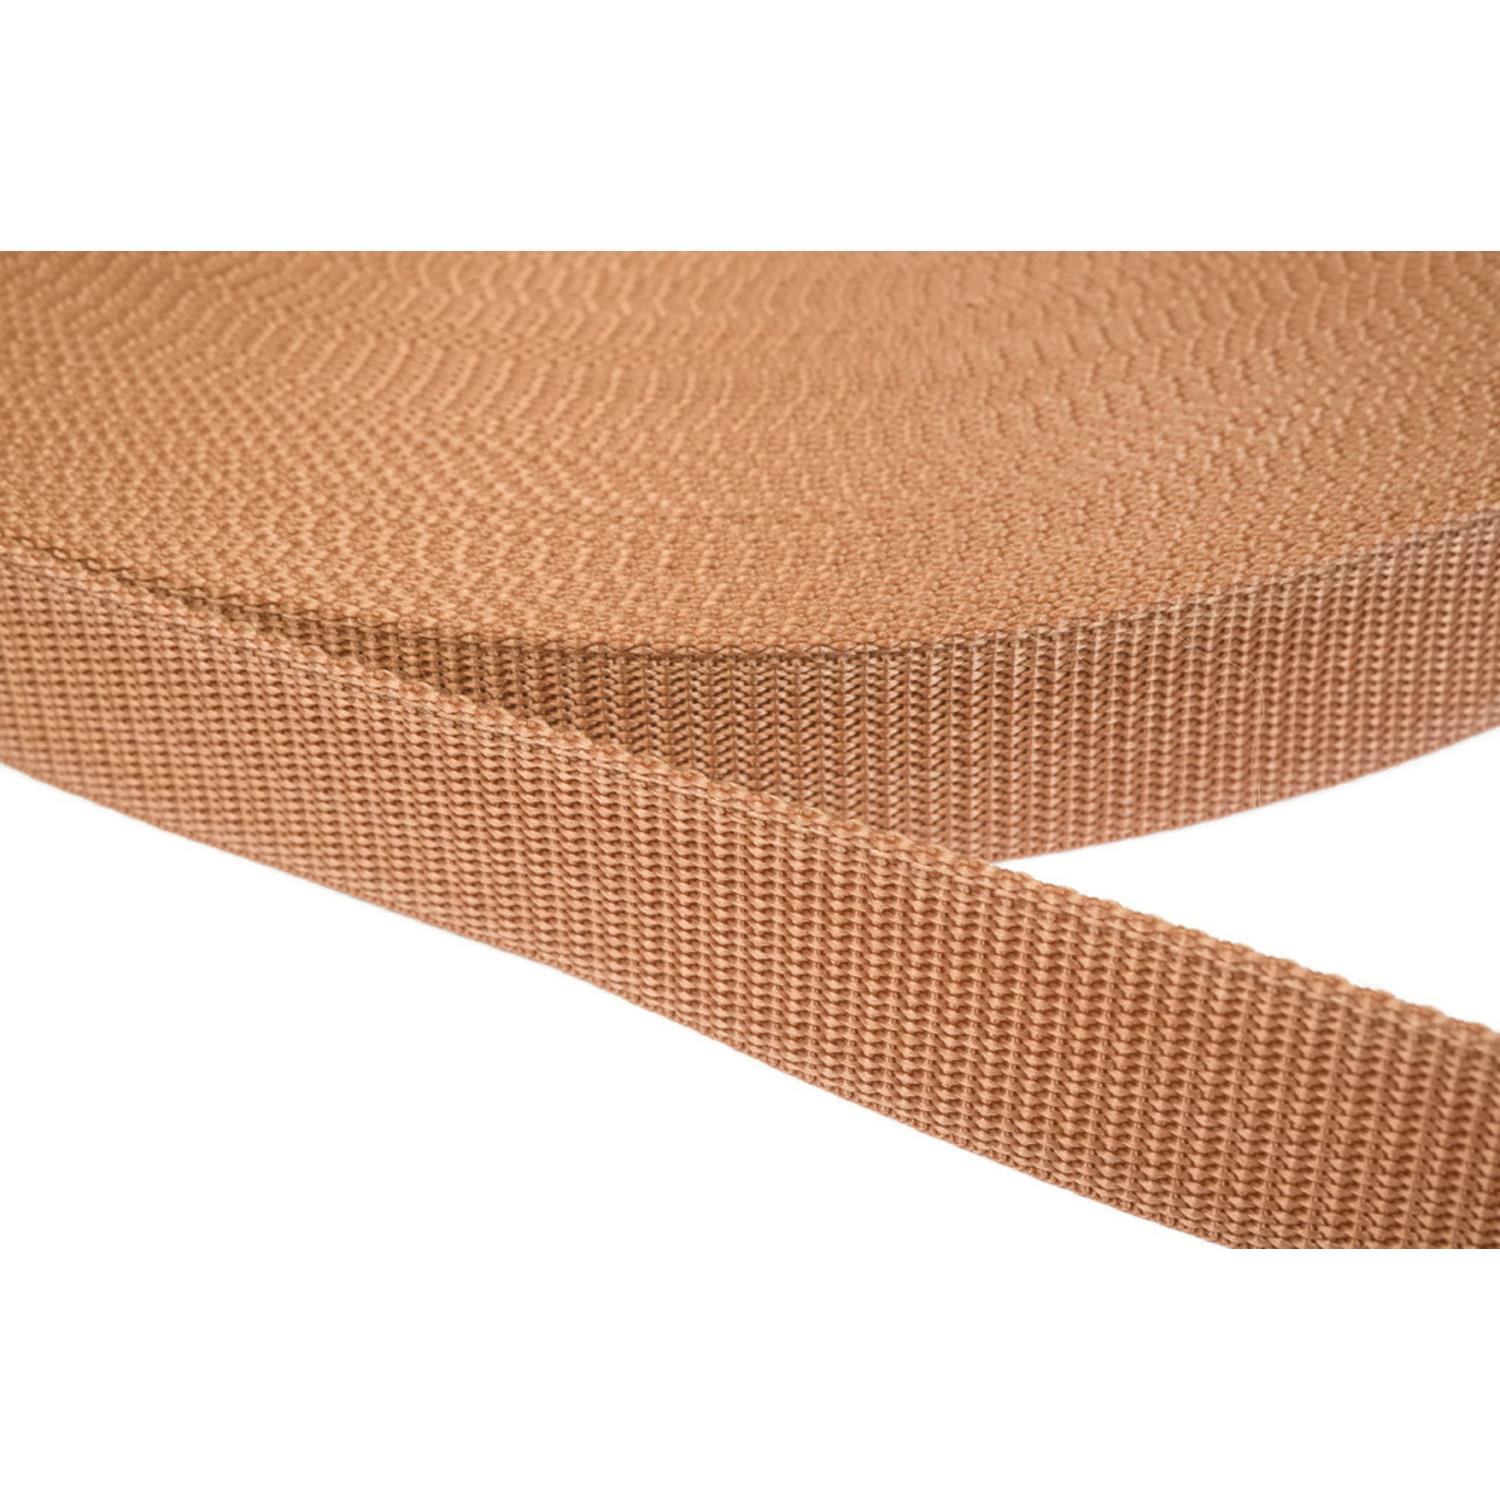 Gurtband 10mm breit aus Polypropylen in 41 Farben 06 - hellbraun 12 Meter